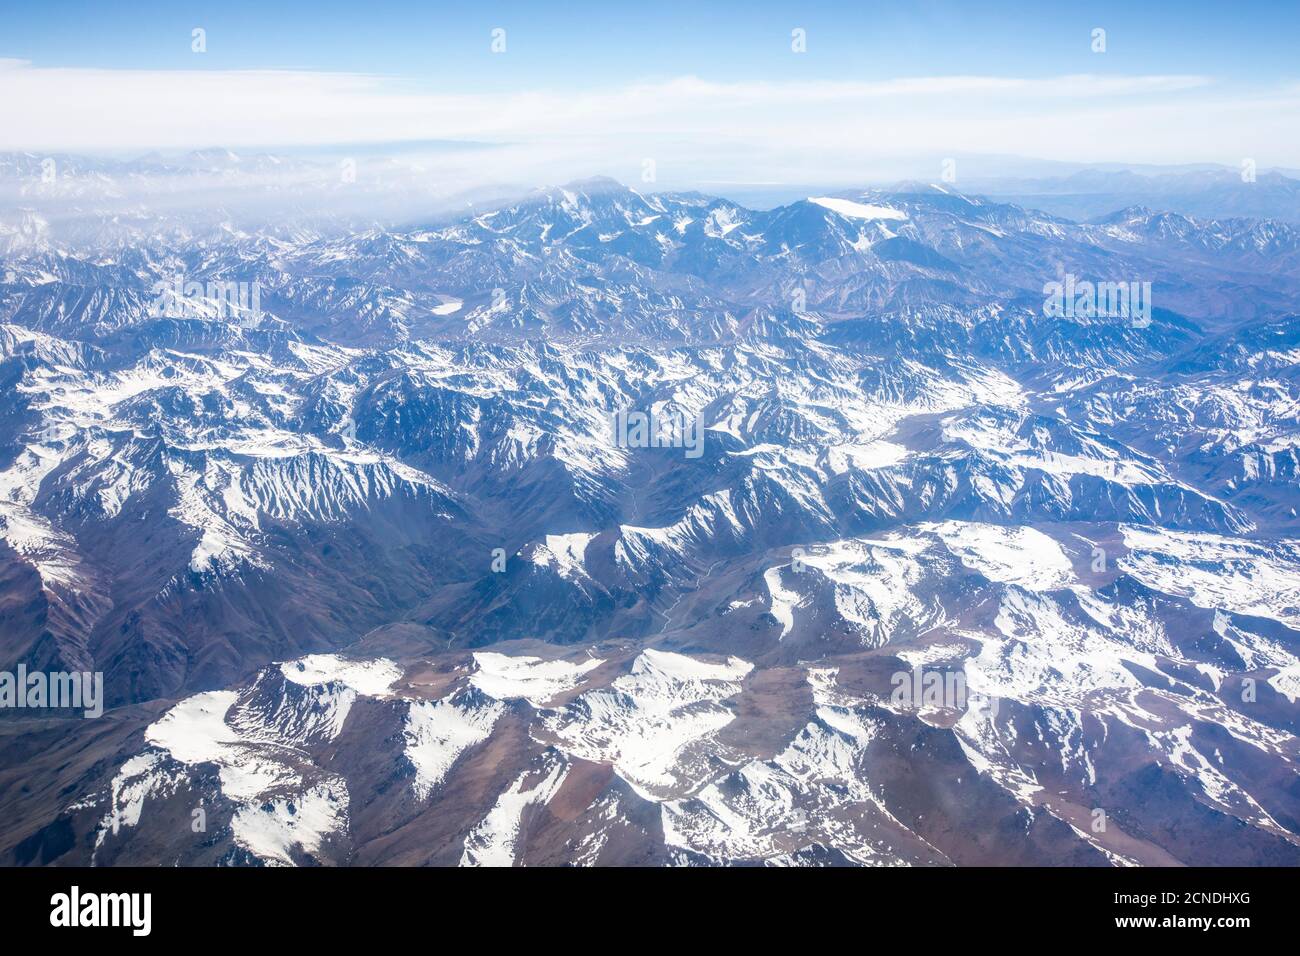 Vista aérea de la Cordillera de los Andes, cubierta de nieve, Chile Foto de stock